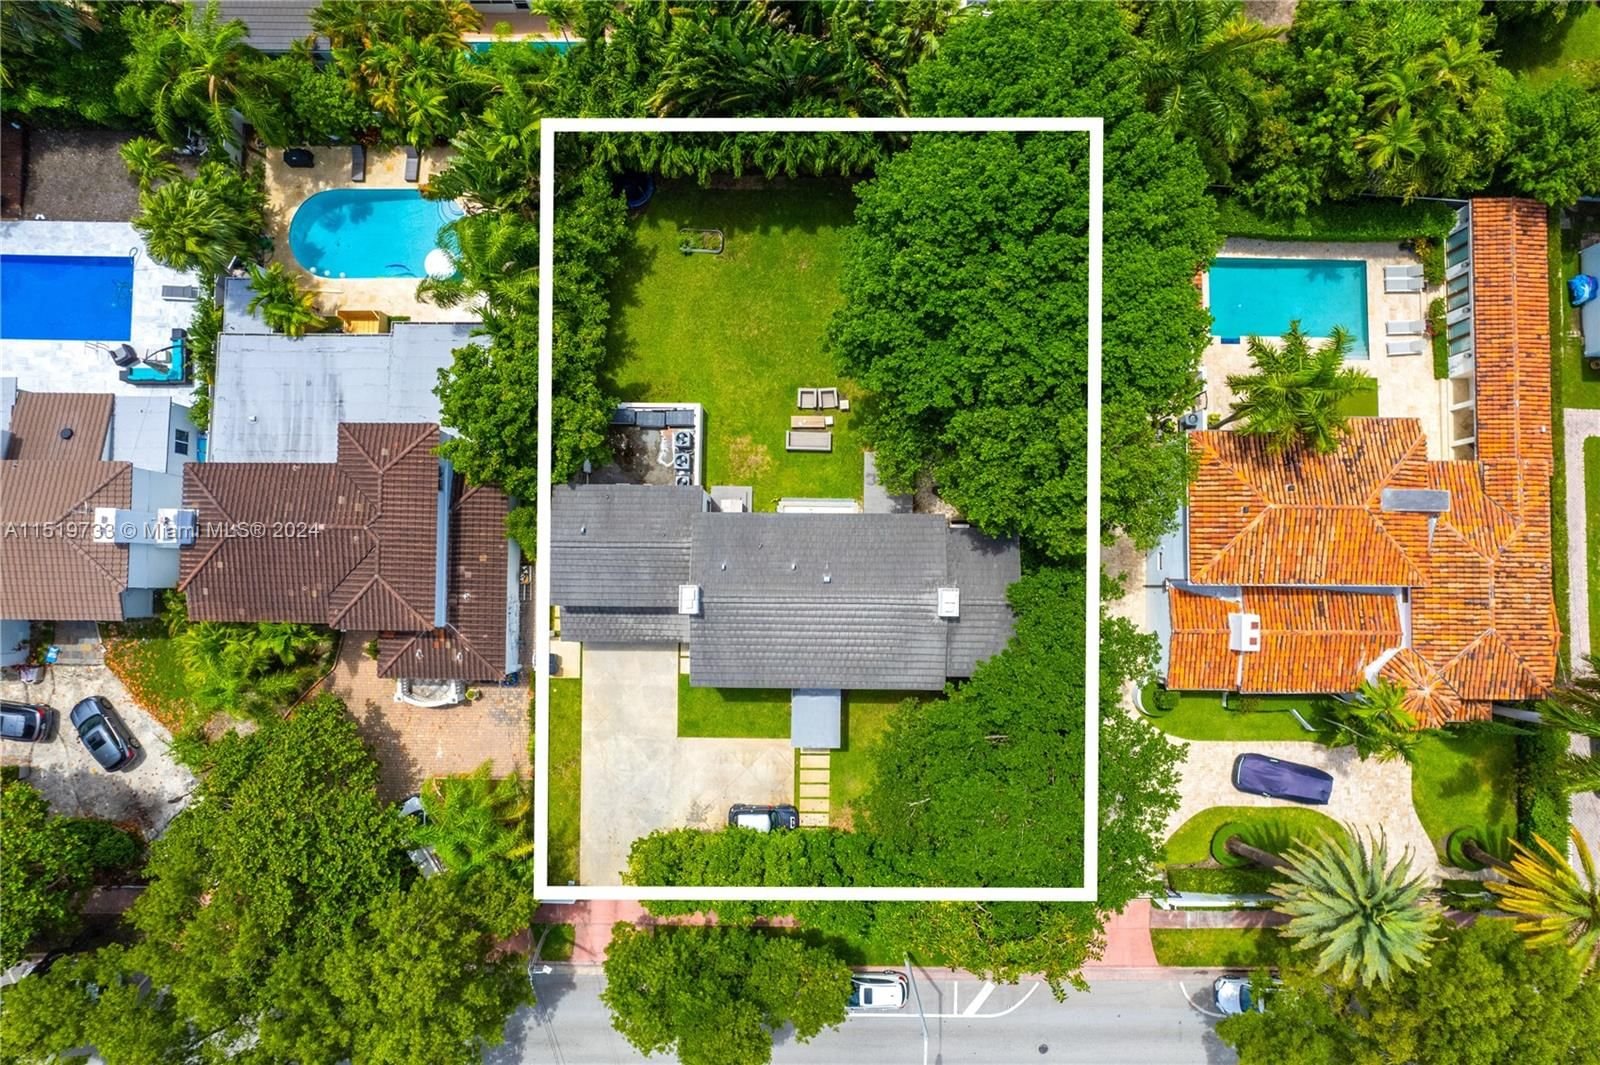 Real estate property located at 5146 Alton Rd, Miami-Dade County, LA GORCE GOLF SUB, Miami Beach, FL